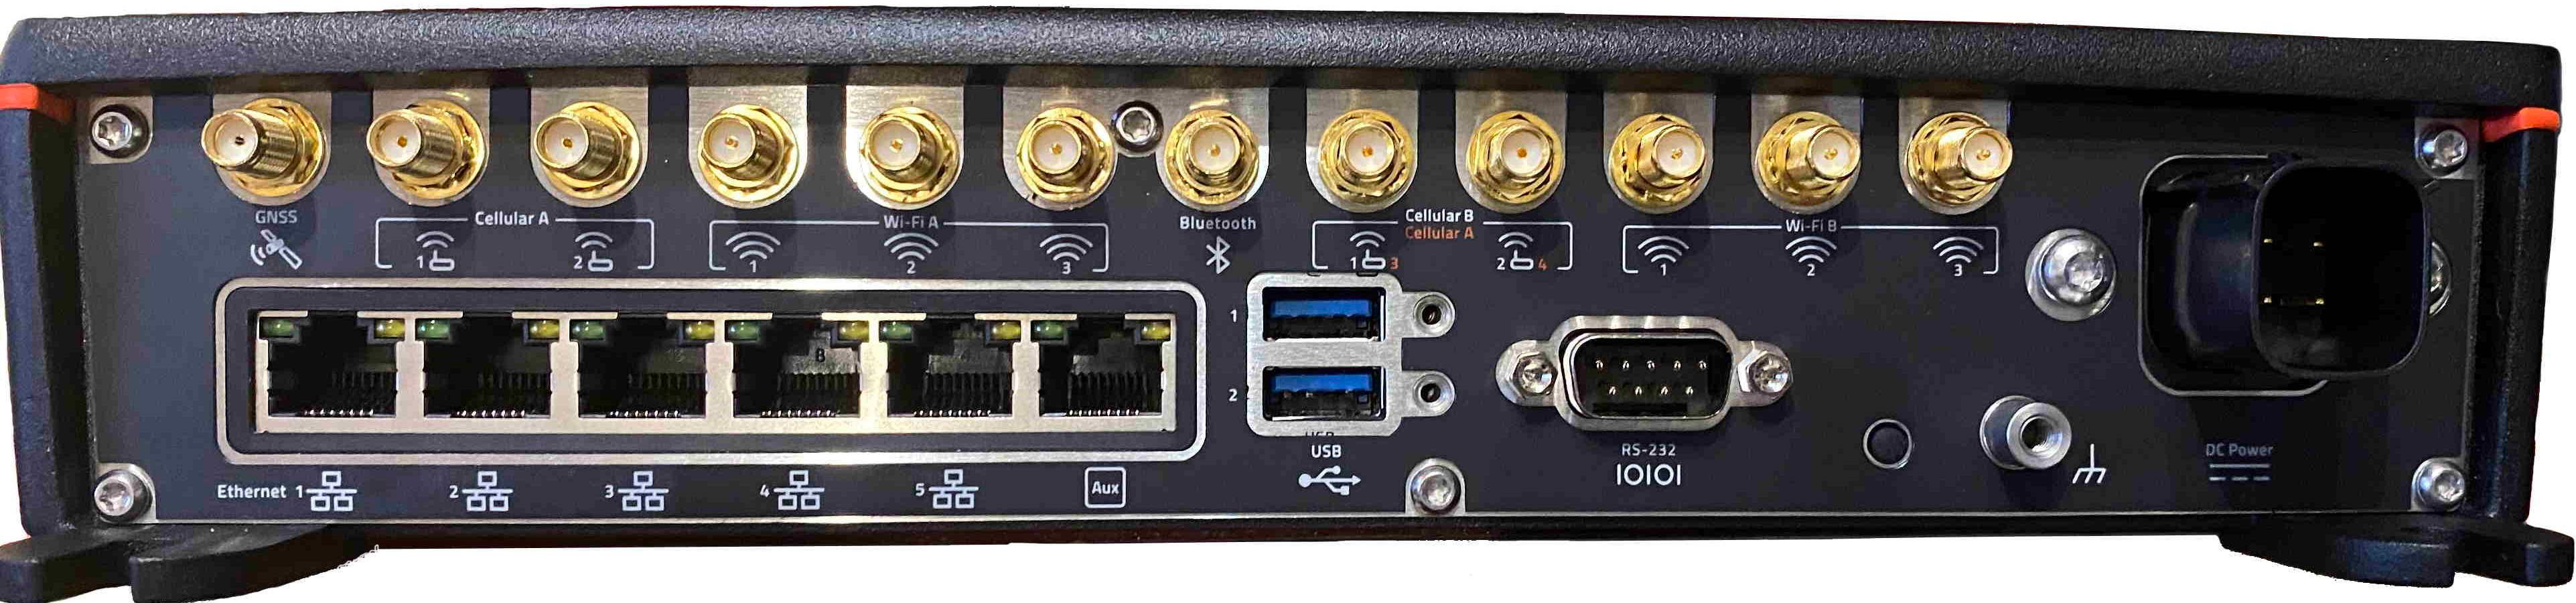 Sierra Wireless MG90 5G Router